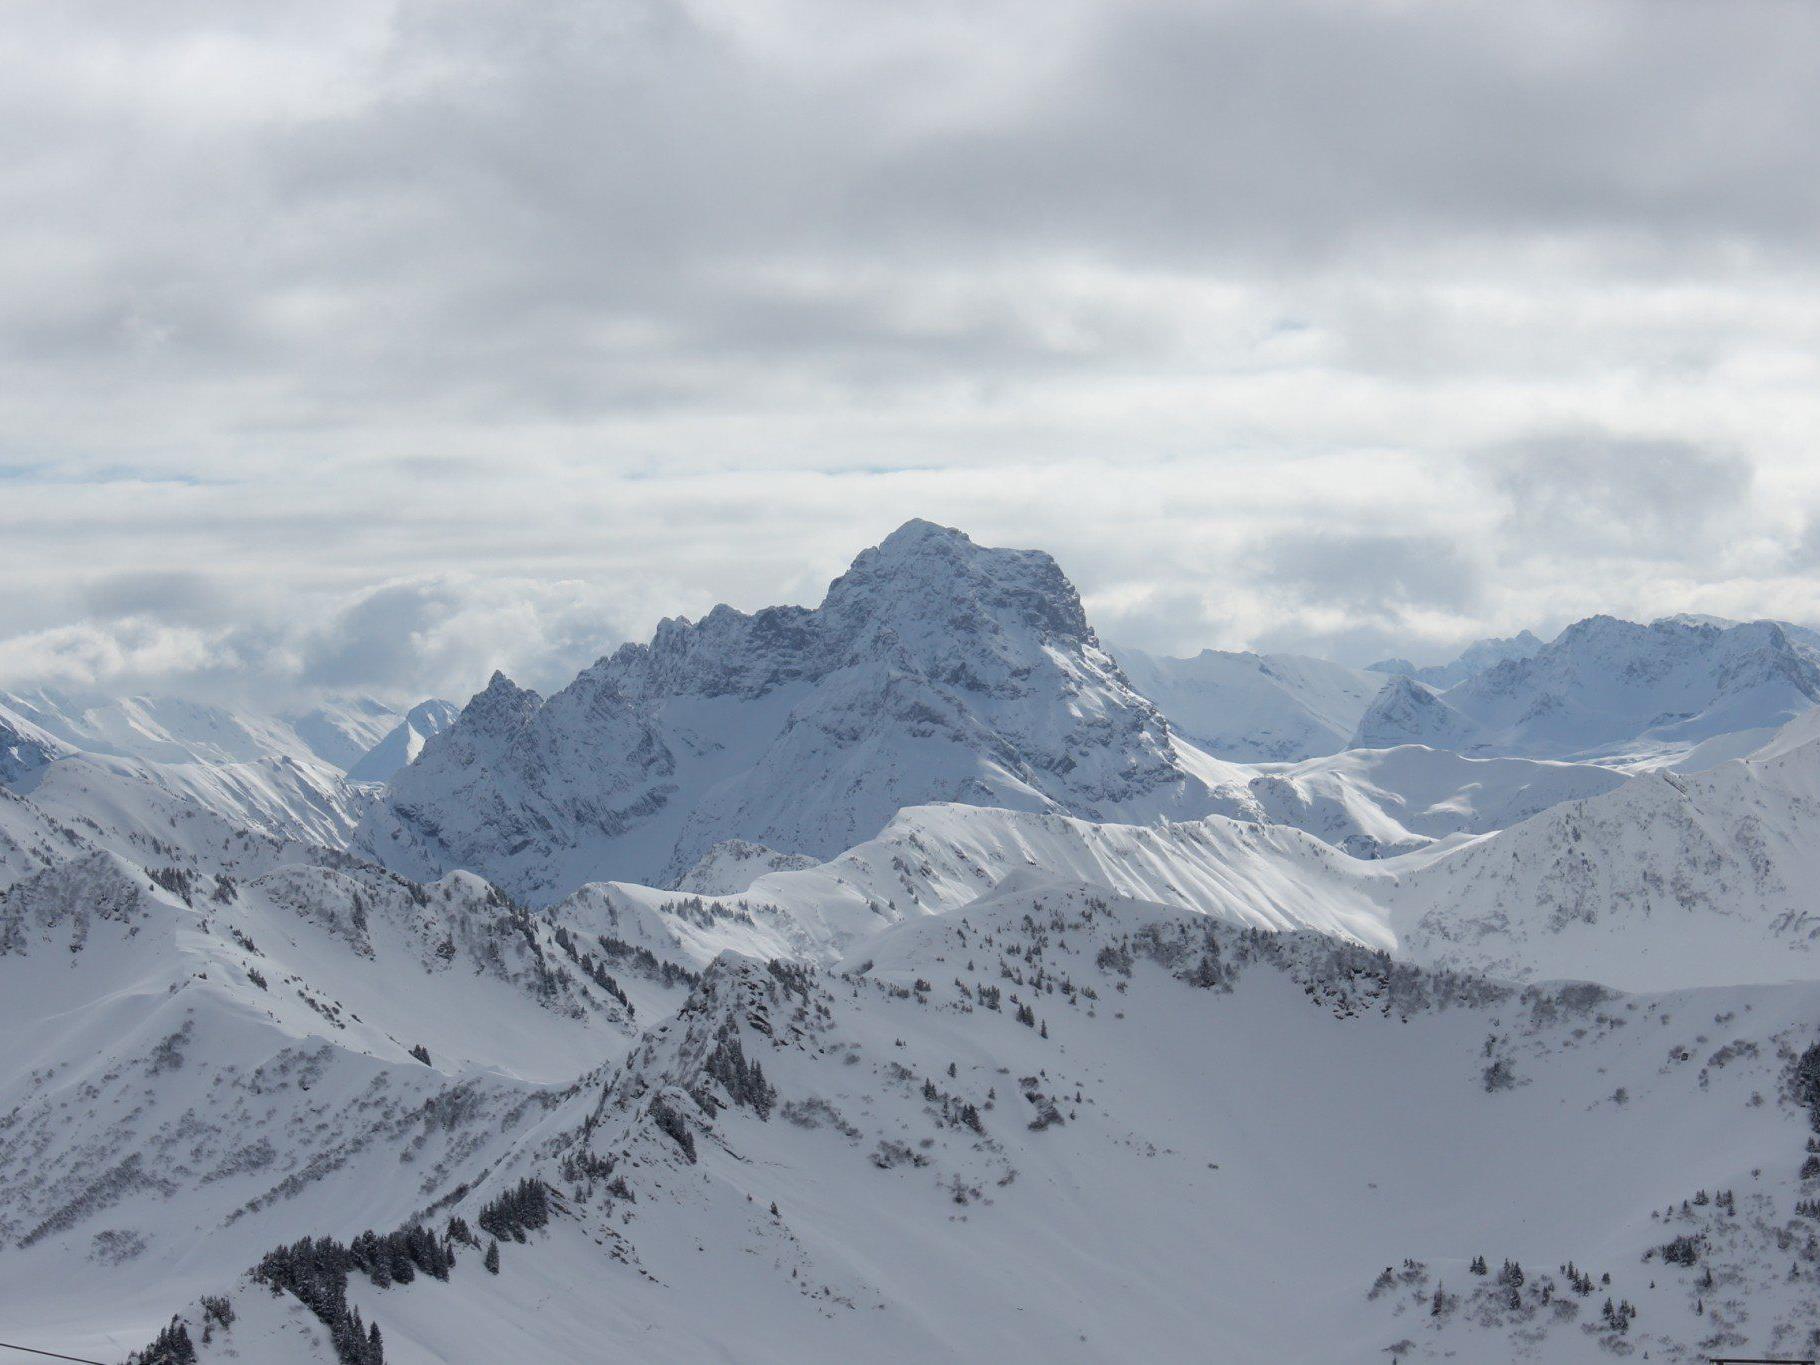 Ausblick von der Bergstation mit dem markanten Widderstein als Blickfang in der Mitte des Bildes.